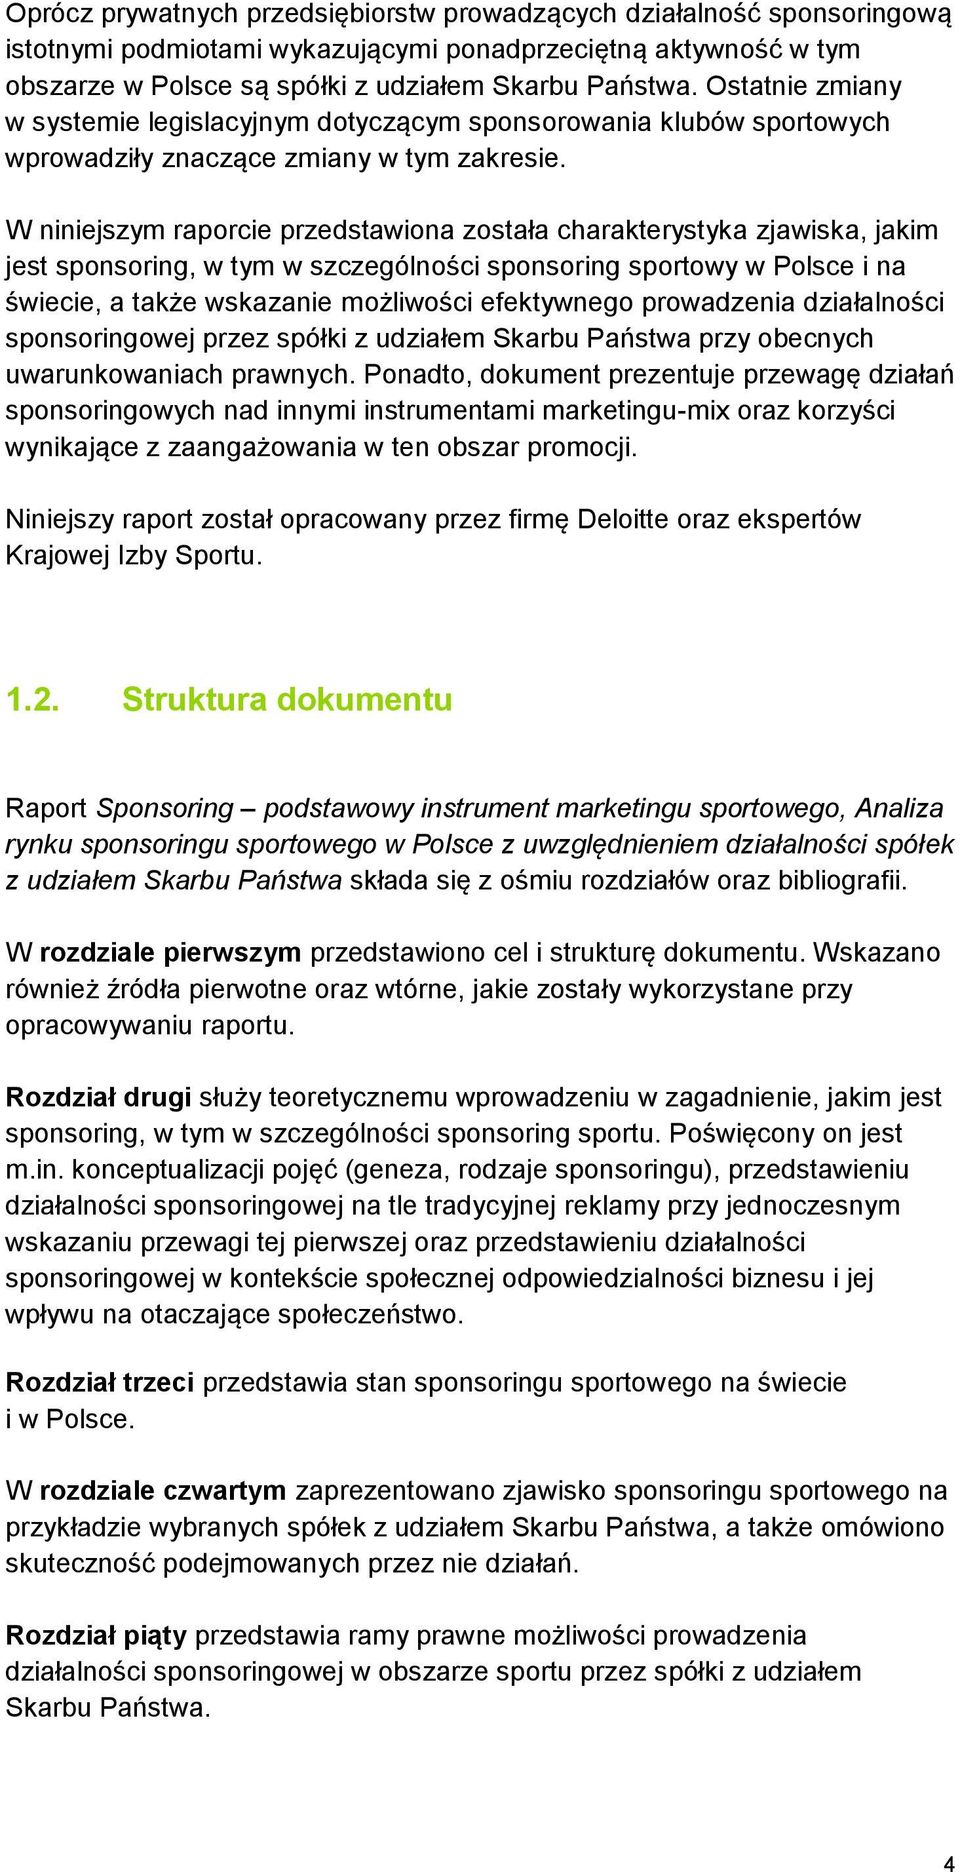 W niniejszym raporcie przedstawiona została charakterystyka zjawiska, jakim jest sponsoring, w tym w szczególności sponsoring sportowy w Polsce i na świecie, a także wskazanie możliwości efektywnego